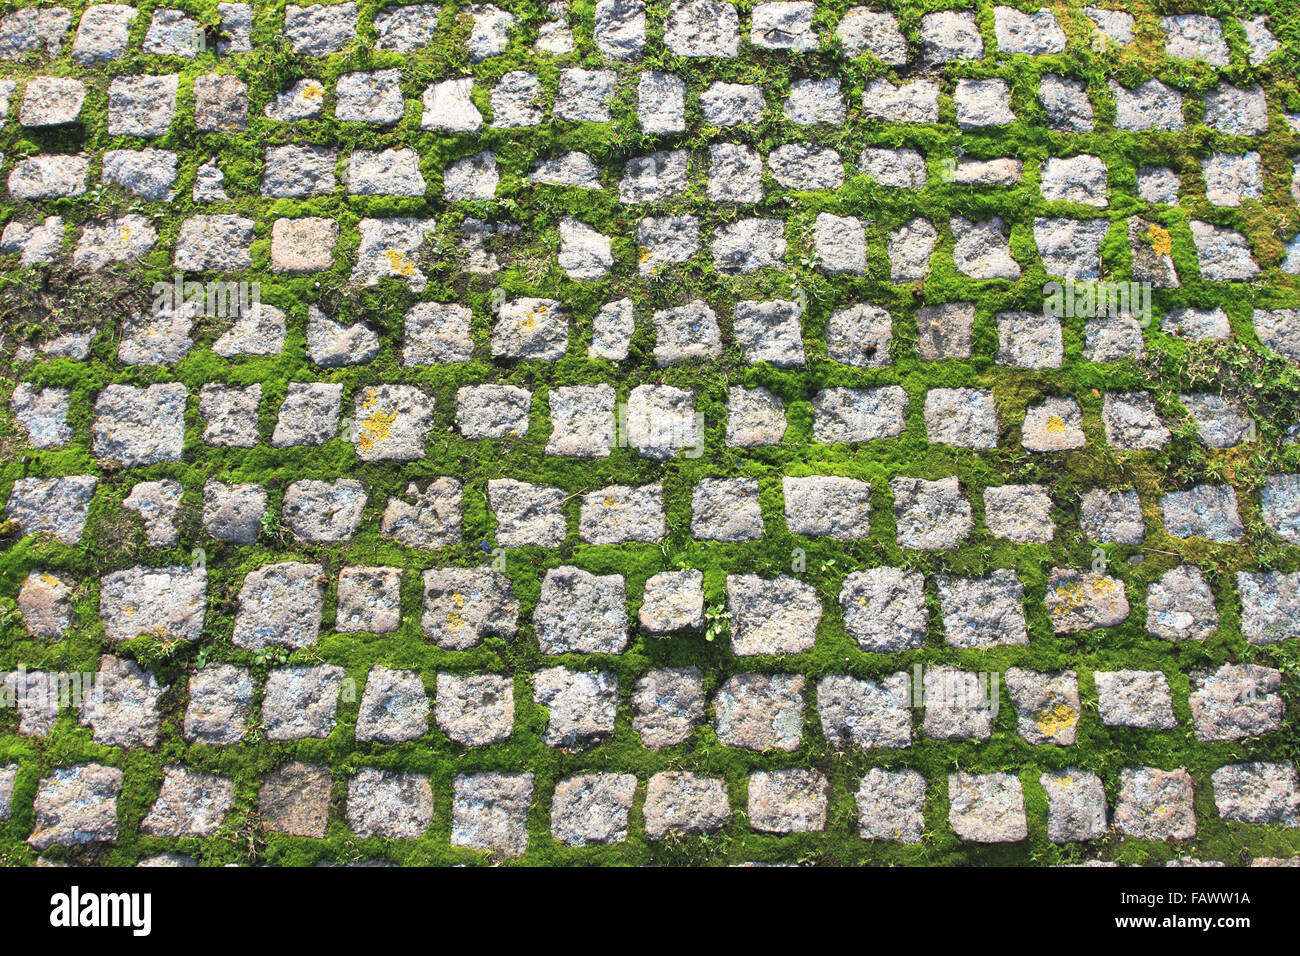 Mit Moos bedeckte Pflastersteine, Steinblöcke auf dem Boden, Norfolk, Vereinigtes Königreich Stockfoto